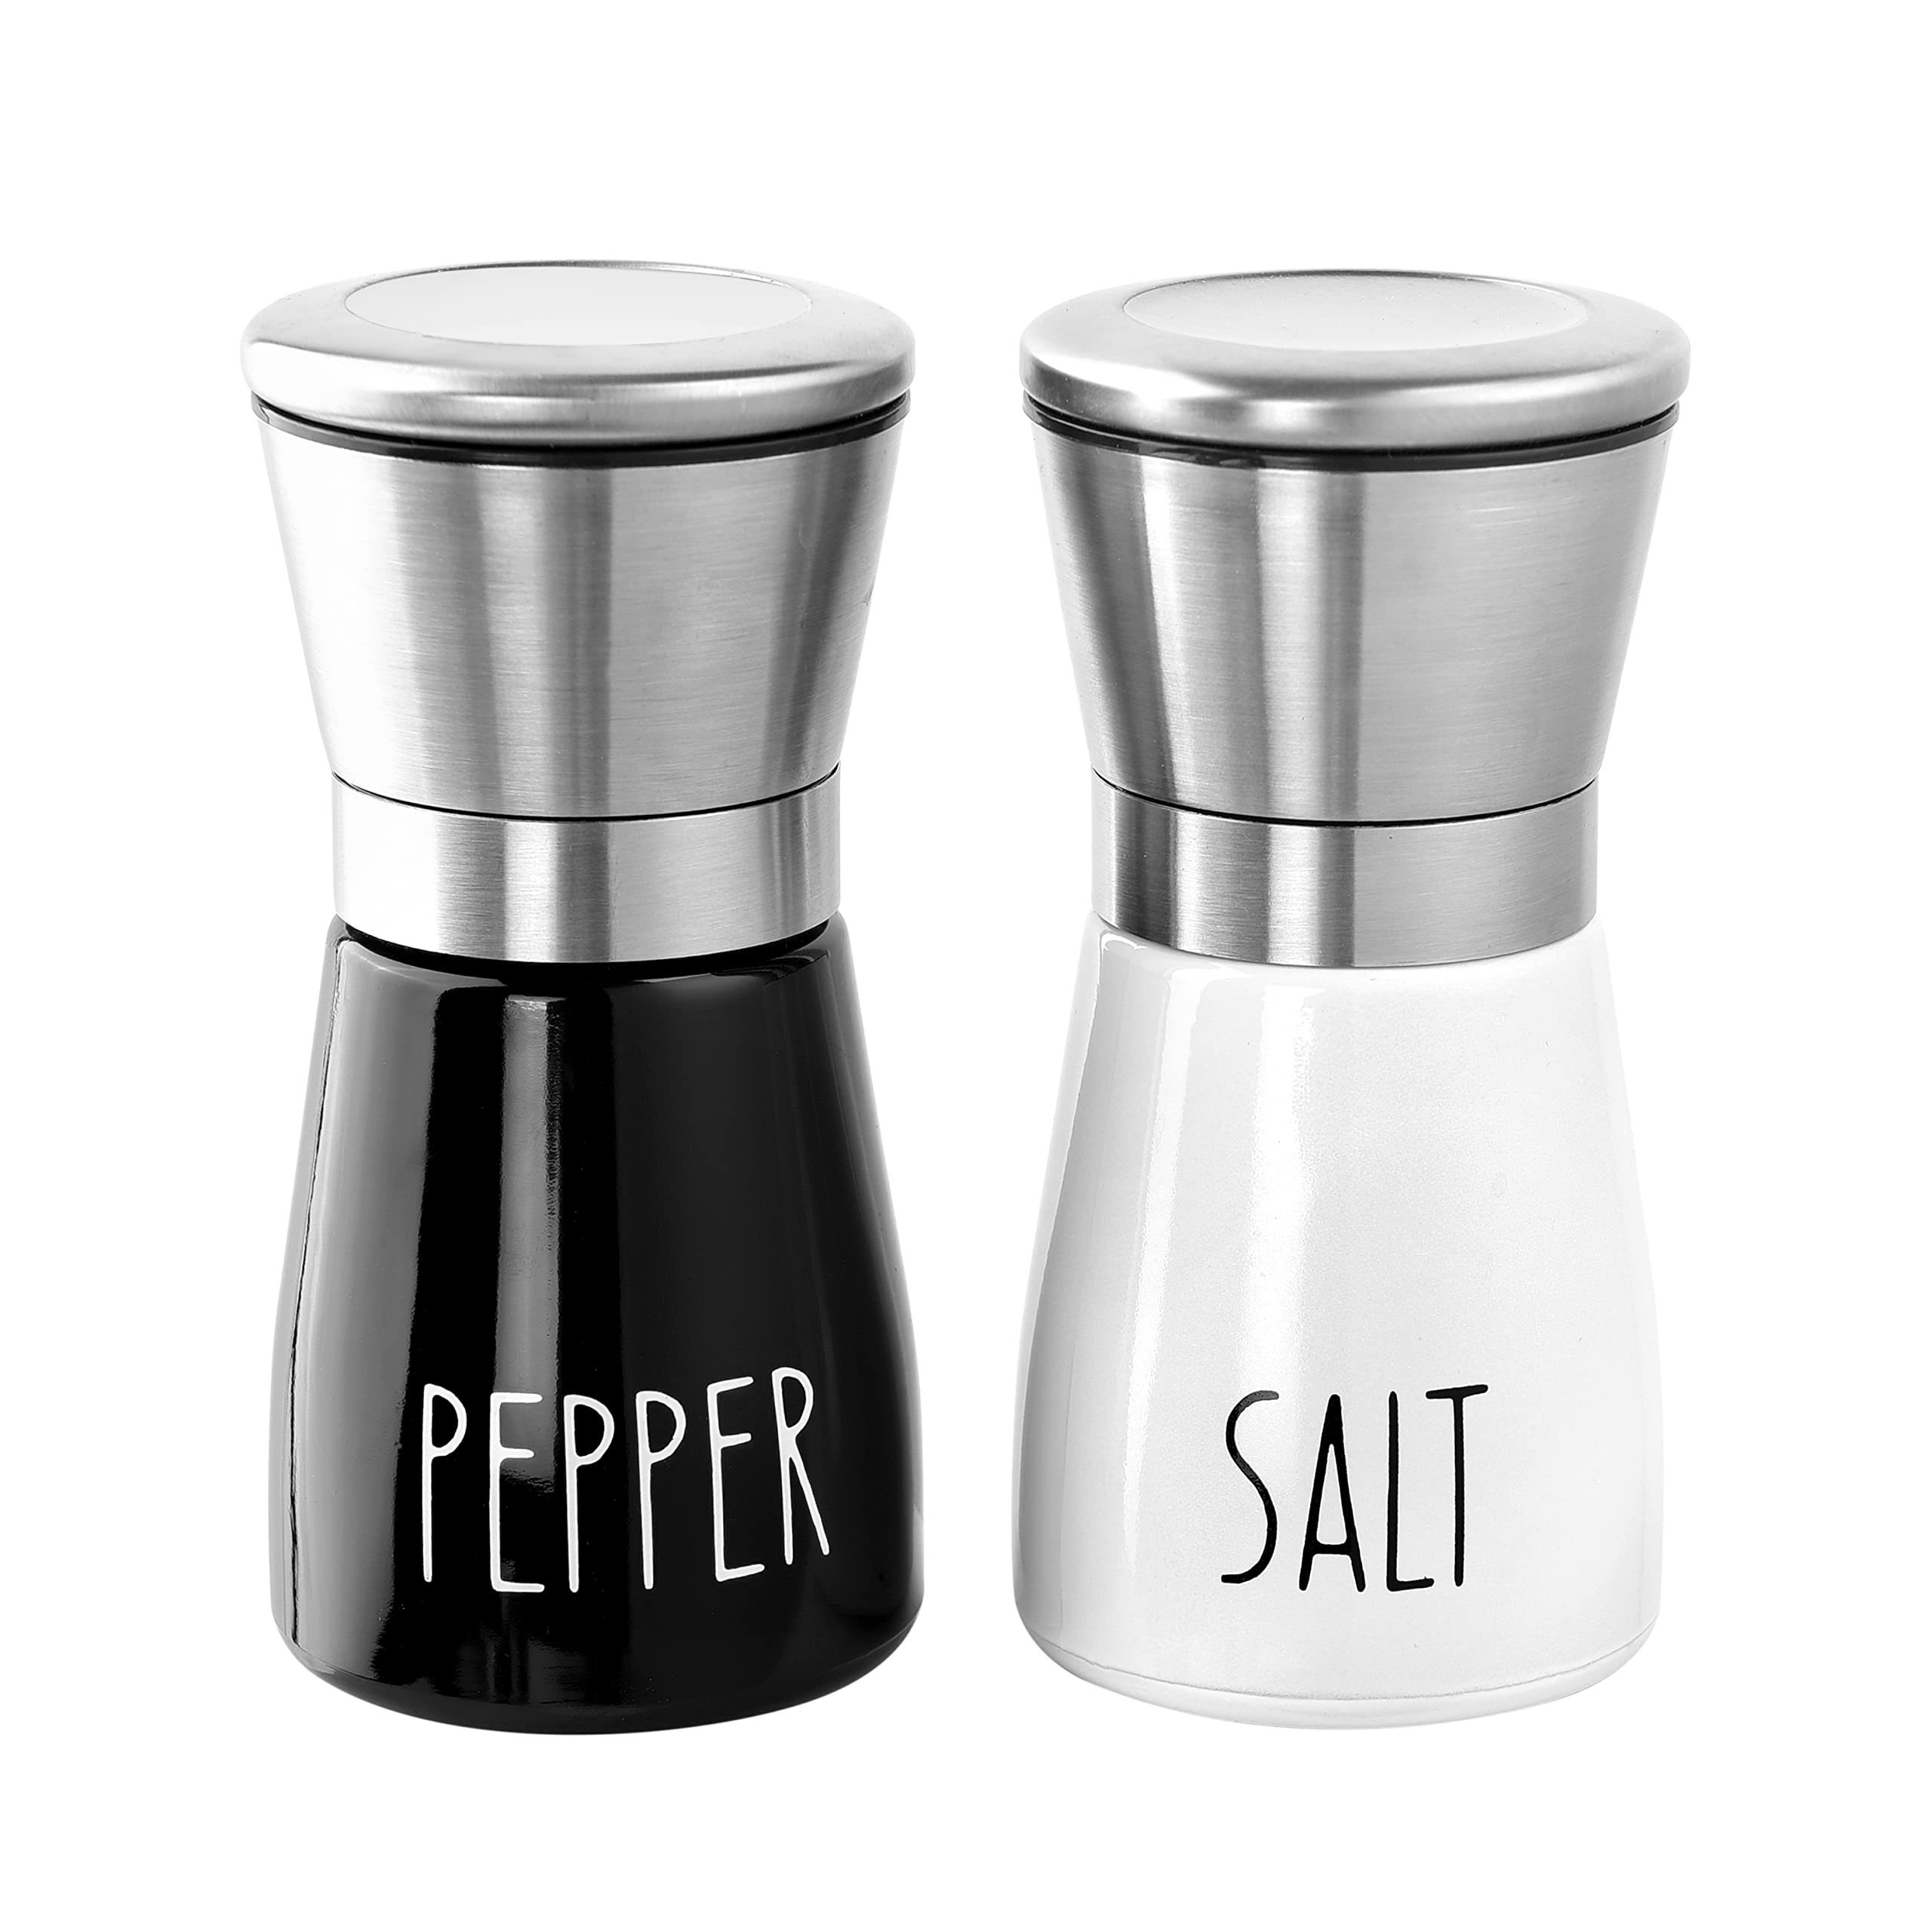 Salt and Pepper Grinder Set - 2 Pack - Pepper Mill, Salt Grinder